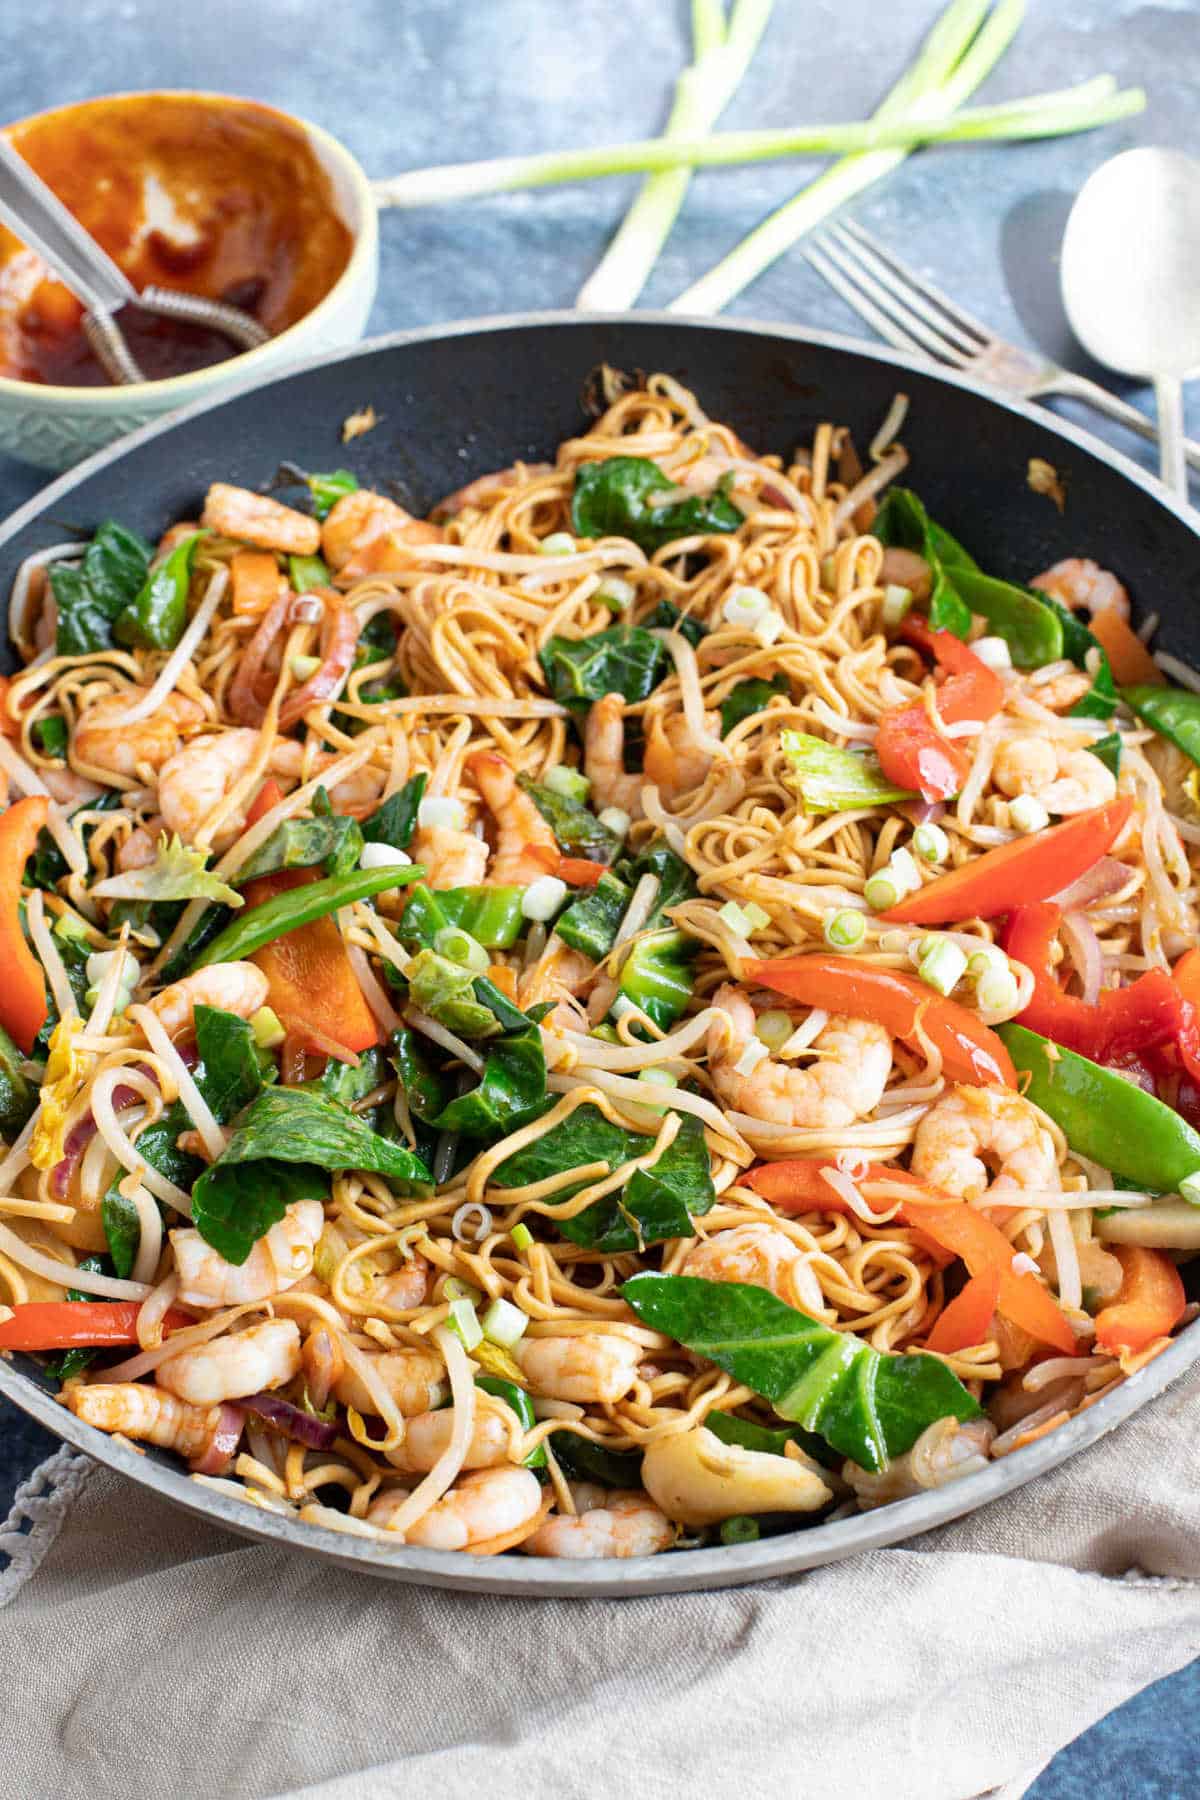 Prawn chow mein in a wok.